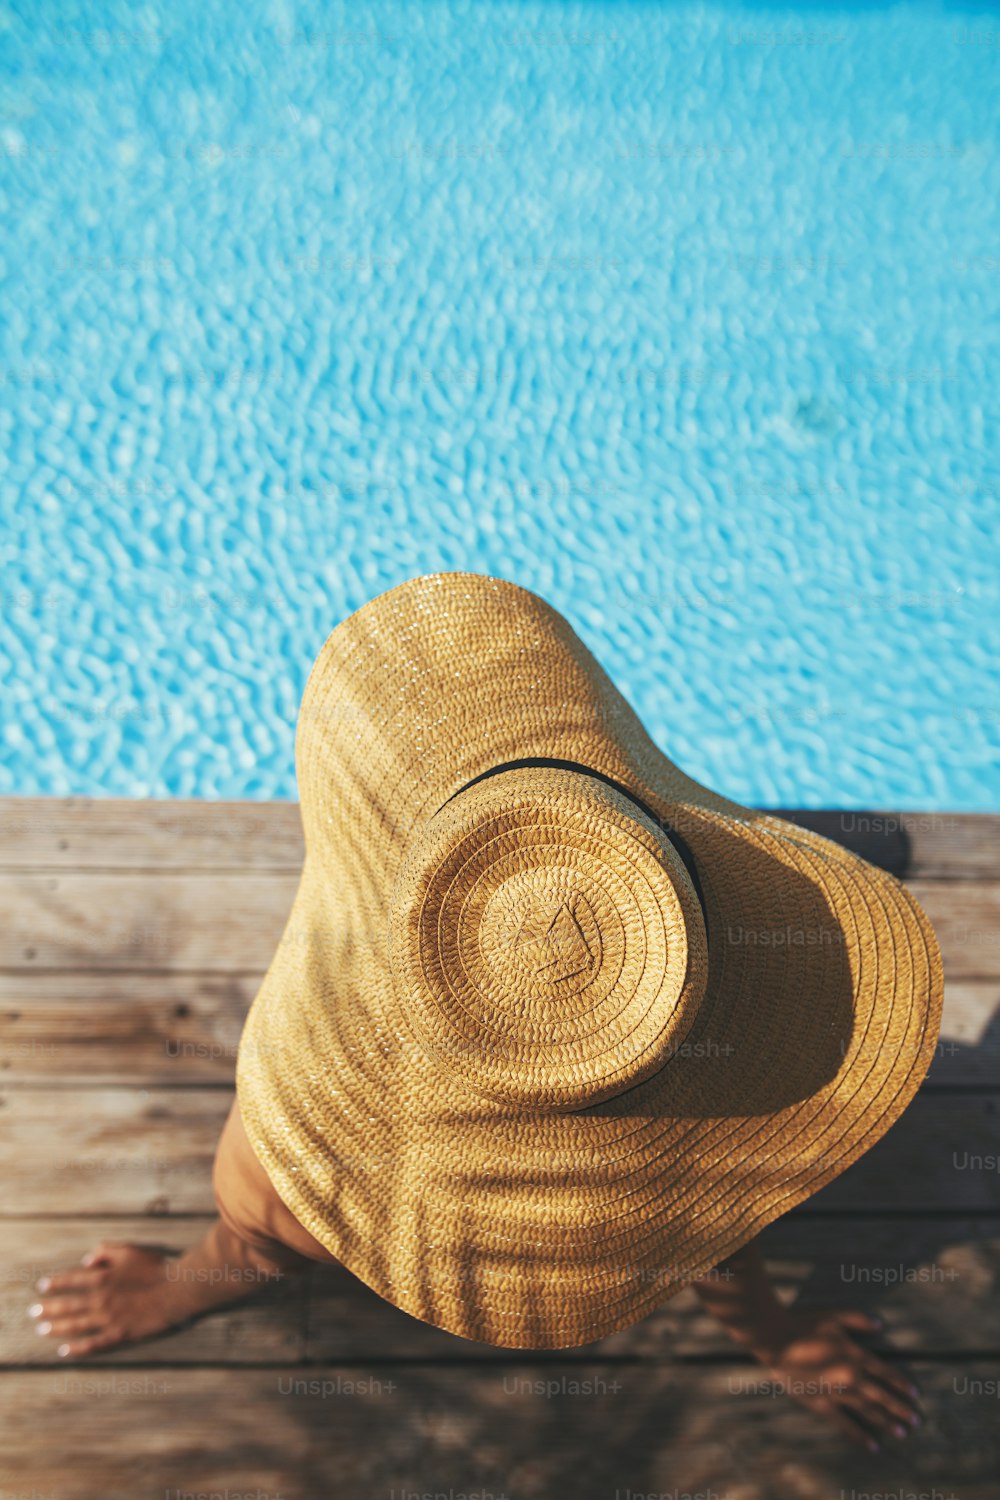 夏休みを楽しんでいます。ヤシの木の桟橋でリラックスしている帽子をかぶった美しい女性は、プールの端に影を残します。スリムな若い女性がプールで日光浴をしている様子を上から見ています。休日と旅行